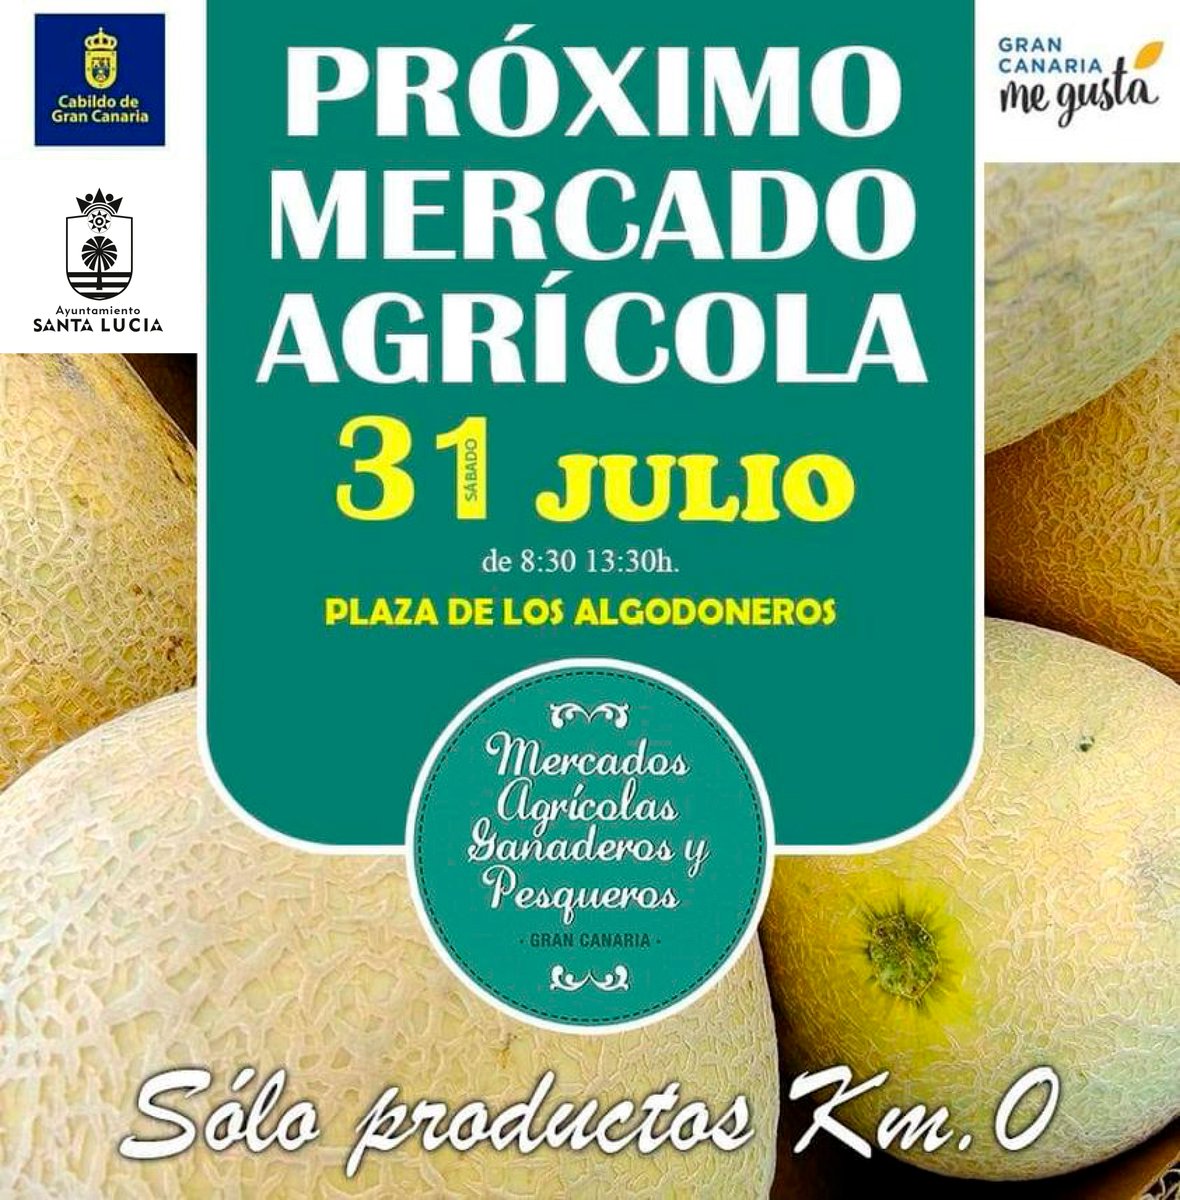 𝐄𝐬𝐭𝐞 𝐬𝐚́𝐛𝐚𝐝𝐨 𝟑𝟏 𝐝𝐞 𝐣𝐮𝐥𝐢𝐨 𝐯𝐮𝐞𝐥𝐯𝐞 𝐞𝐧 𝐌𝐞𝐫𝐜𝐚𝐝𝐨 𝐀𝐠𝐫𝐢́𝐜𝐨𝐥𝐚 𝐚 𝐥𝐚 𝐏𝐥𝐚𝐳𝐚 𝐝𝐞 𝐥𝐨𝐬 𝐀𝐥𝐠𝐨𝐝𝐨𝐧𝐞𝐫𝐨𝐬. De 8.30 a 13.30, apoya #ProductosKM0 #ProducciónLocal #SantaLucíaAgricultura #SantaLucíaGanadería